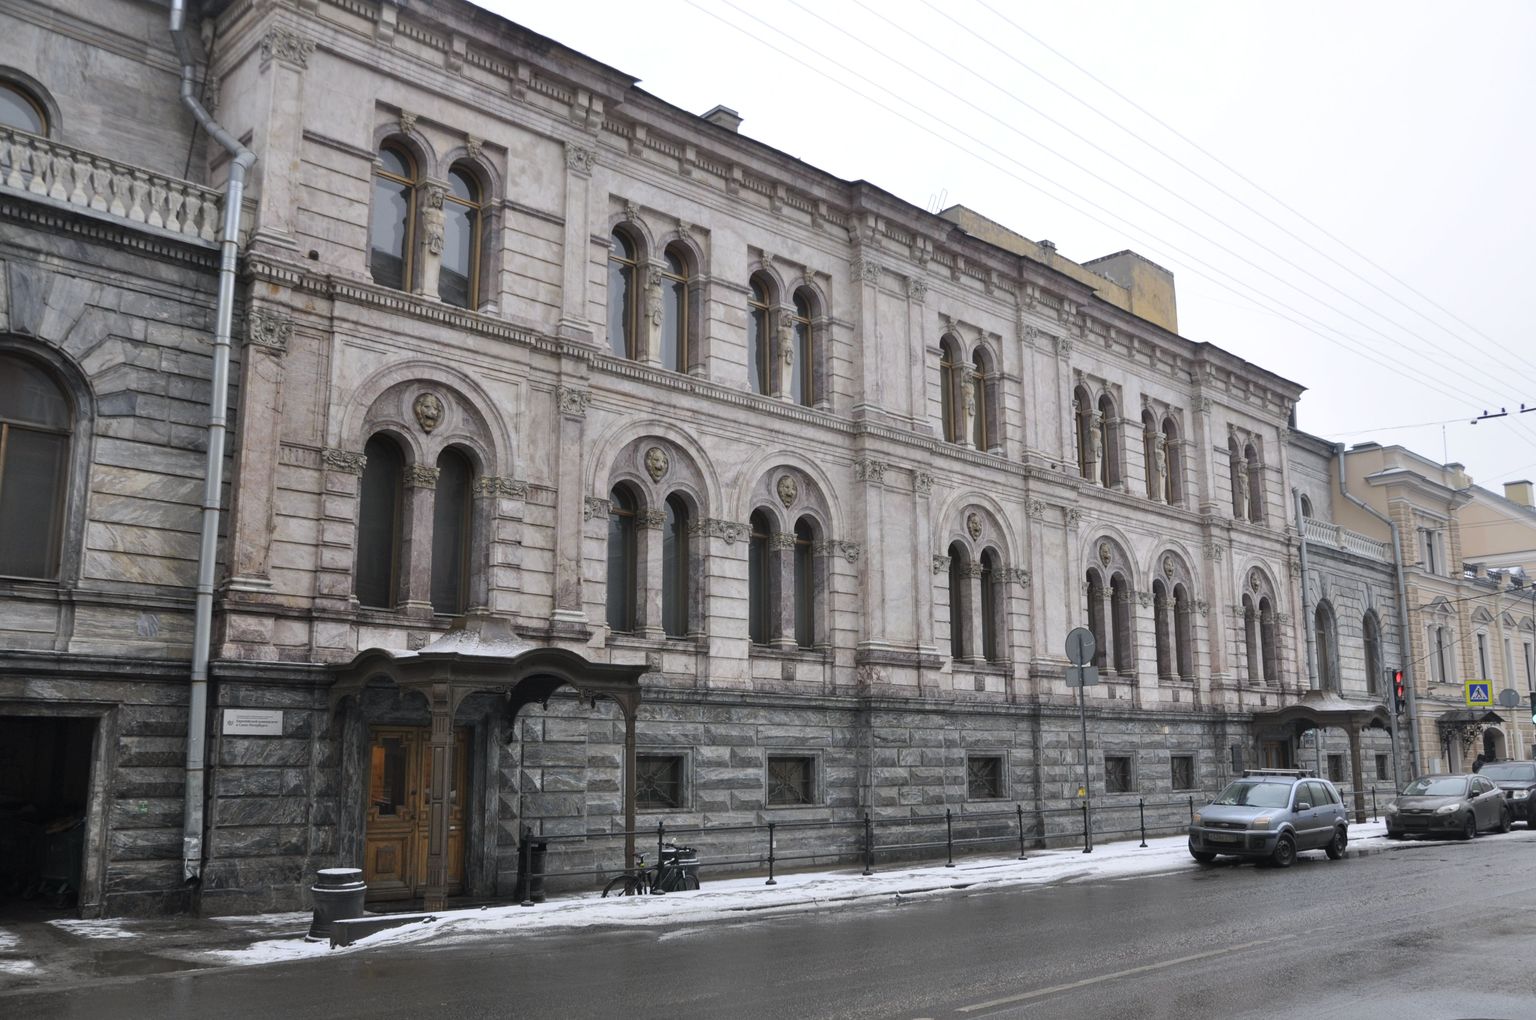 Peterburi liberaalse mainega Euroopa ülikool. Neeva kaldapealse lähedal asuvat ja 18. sajandil ehitatud hoonet kutsutakse ka väikeseks marmorlossiks.